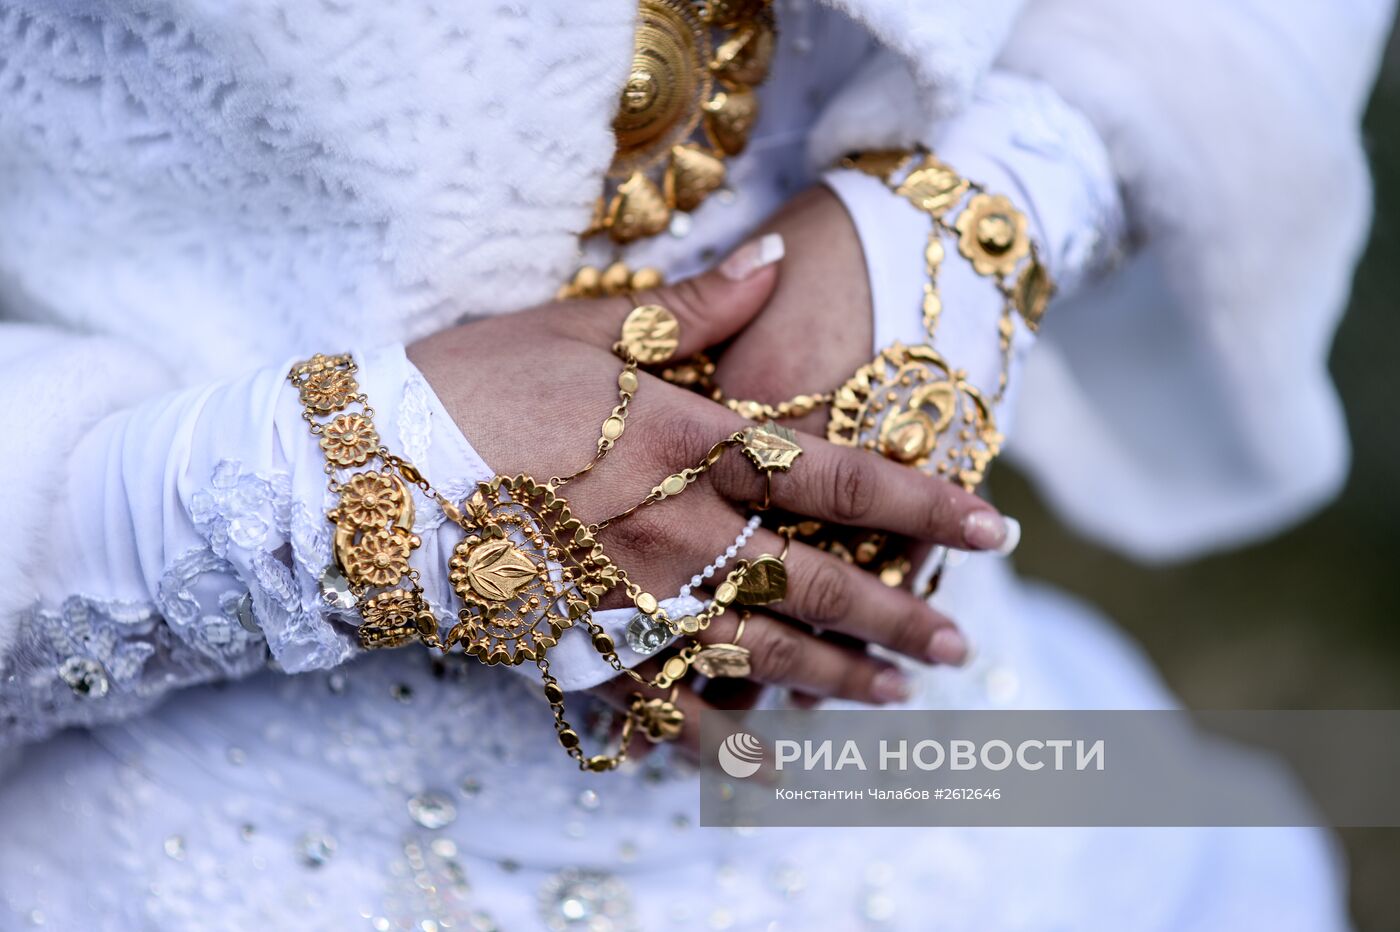 Цыганская свадьба в Новгородской области